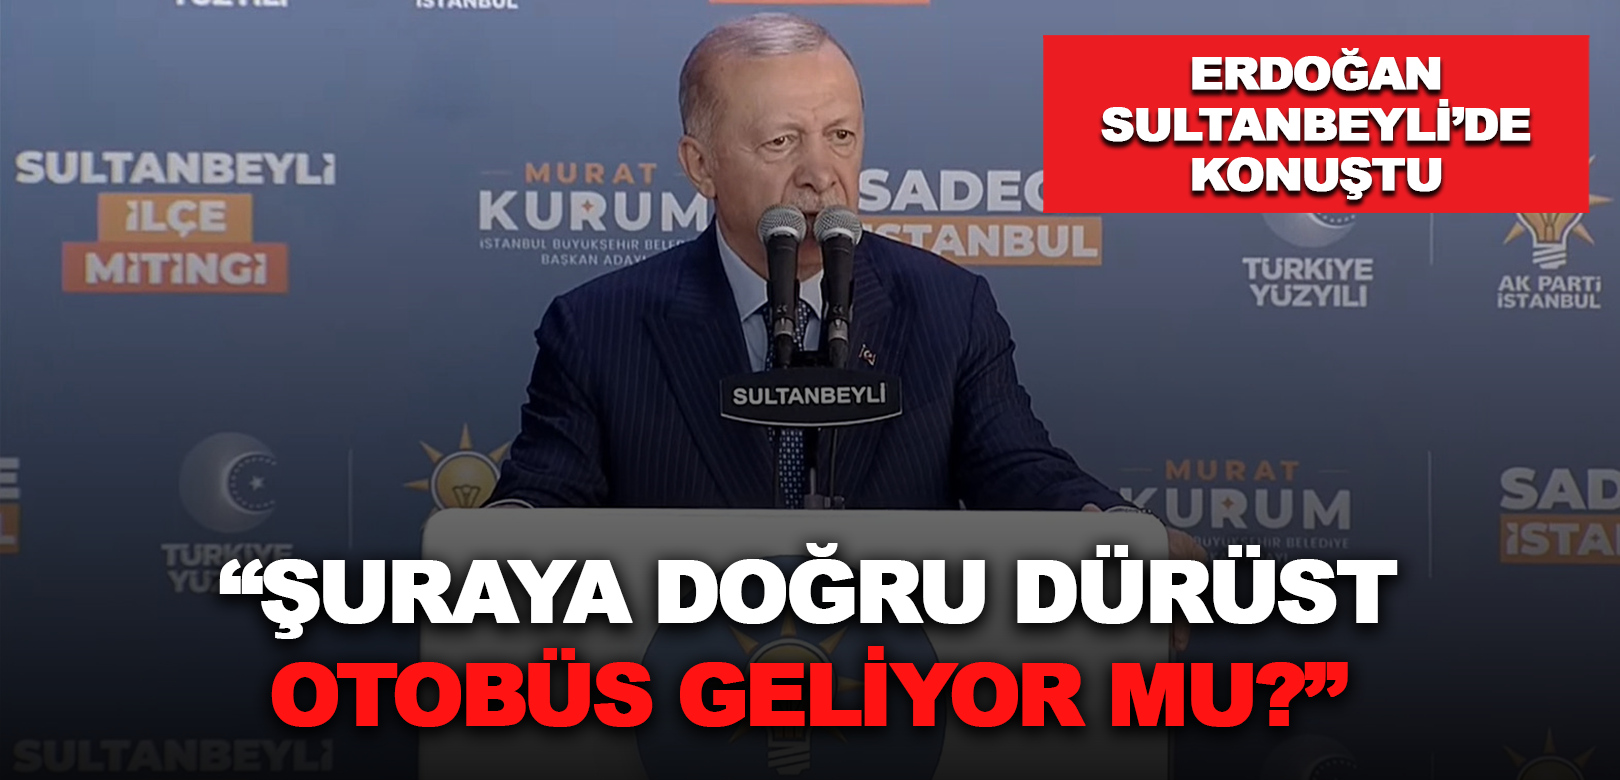 Cumhurbaşkanı Erdoğan, Sultanbeyli’de konuştu: Üzerimize tuzak üstüne tuzak kuruldu